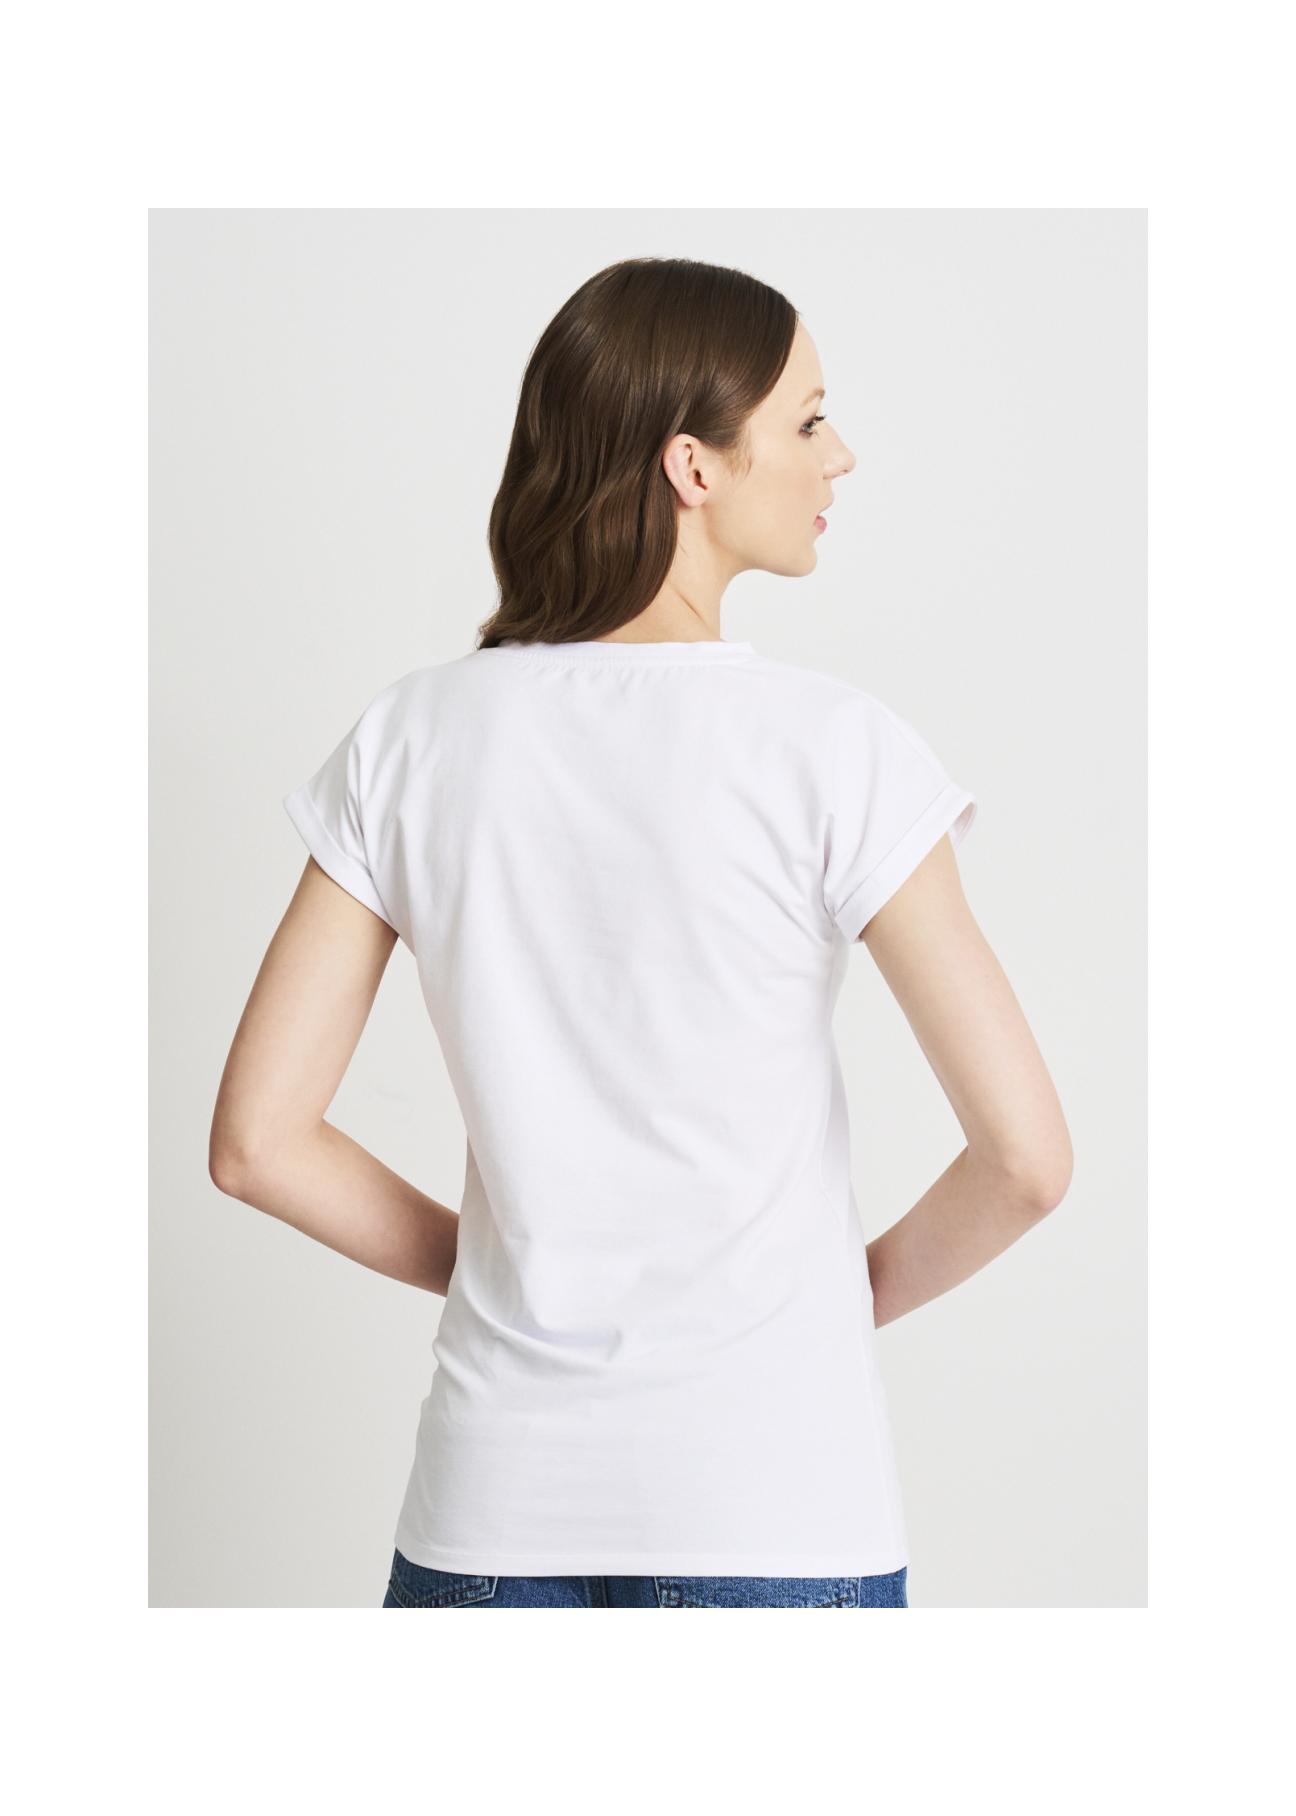 Biały T-shirt damski z wilgą TSHDT-0097-11(W22)-05